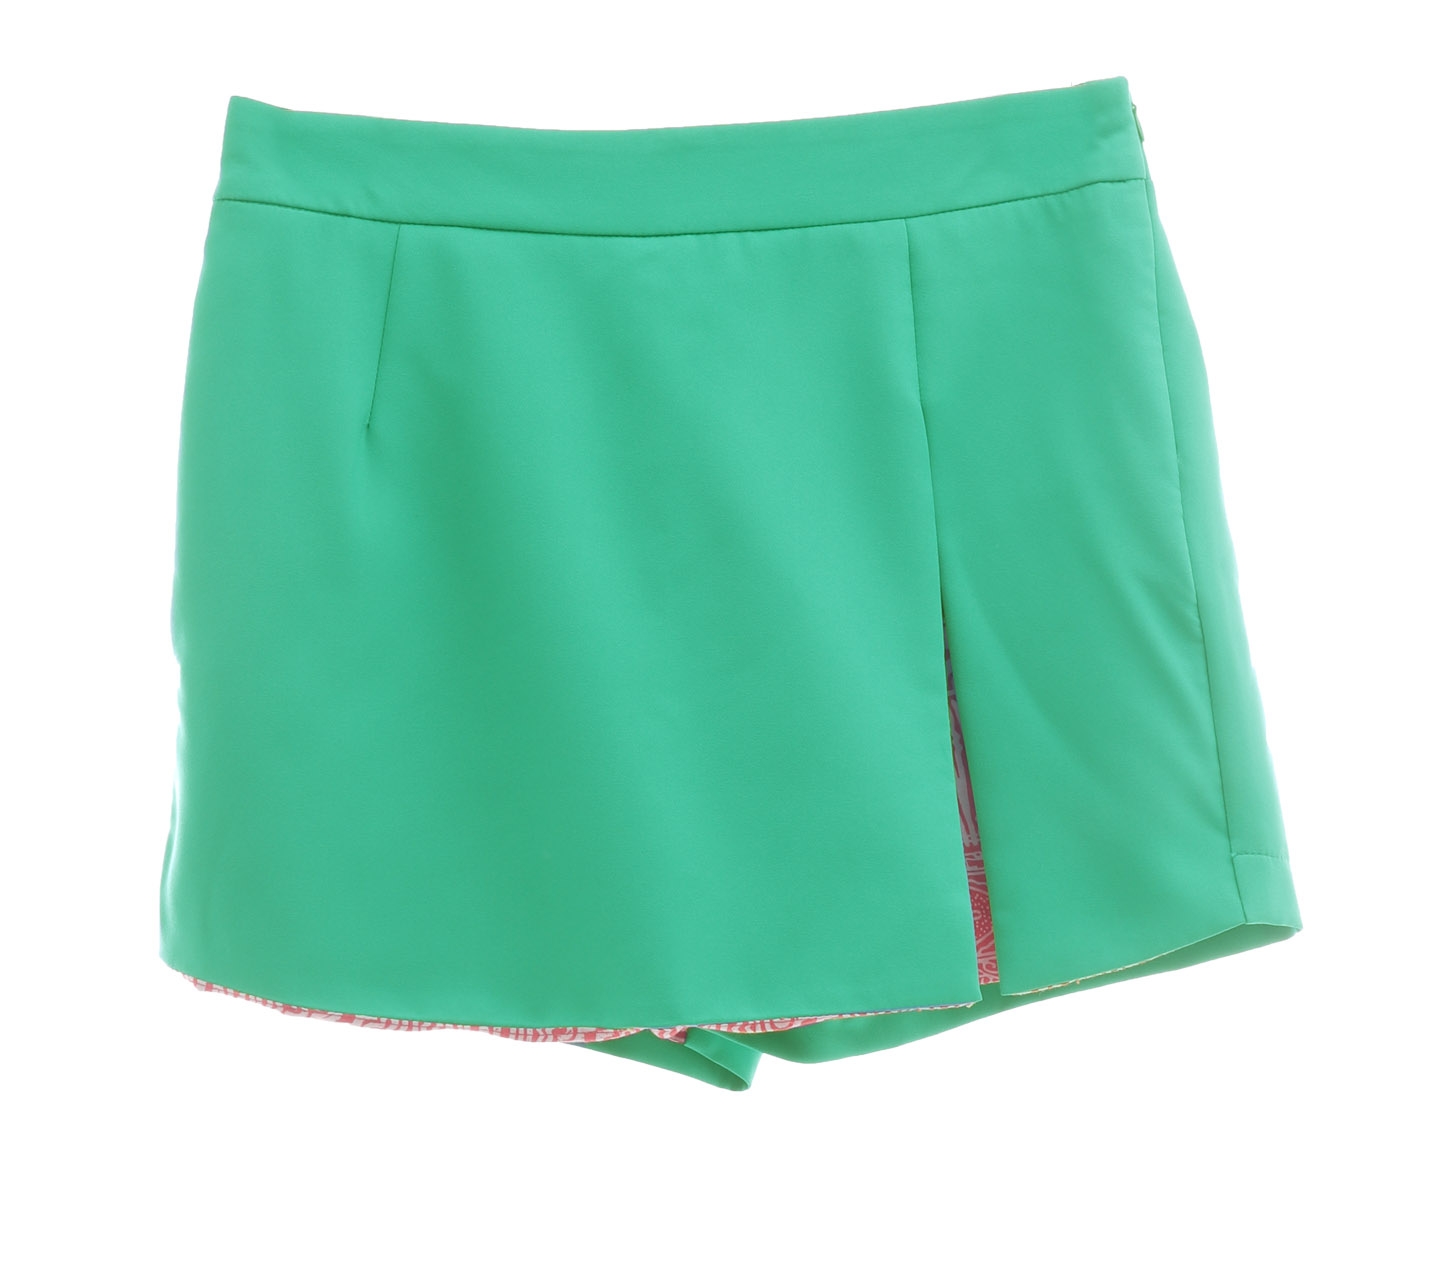 Ree Green Skort Short Pants